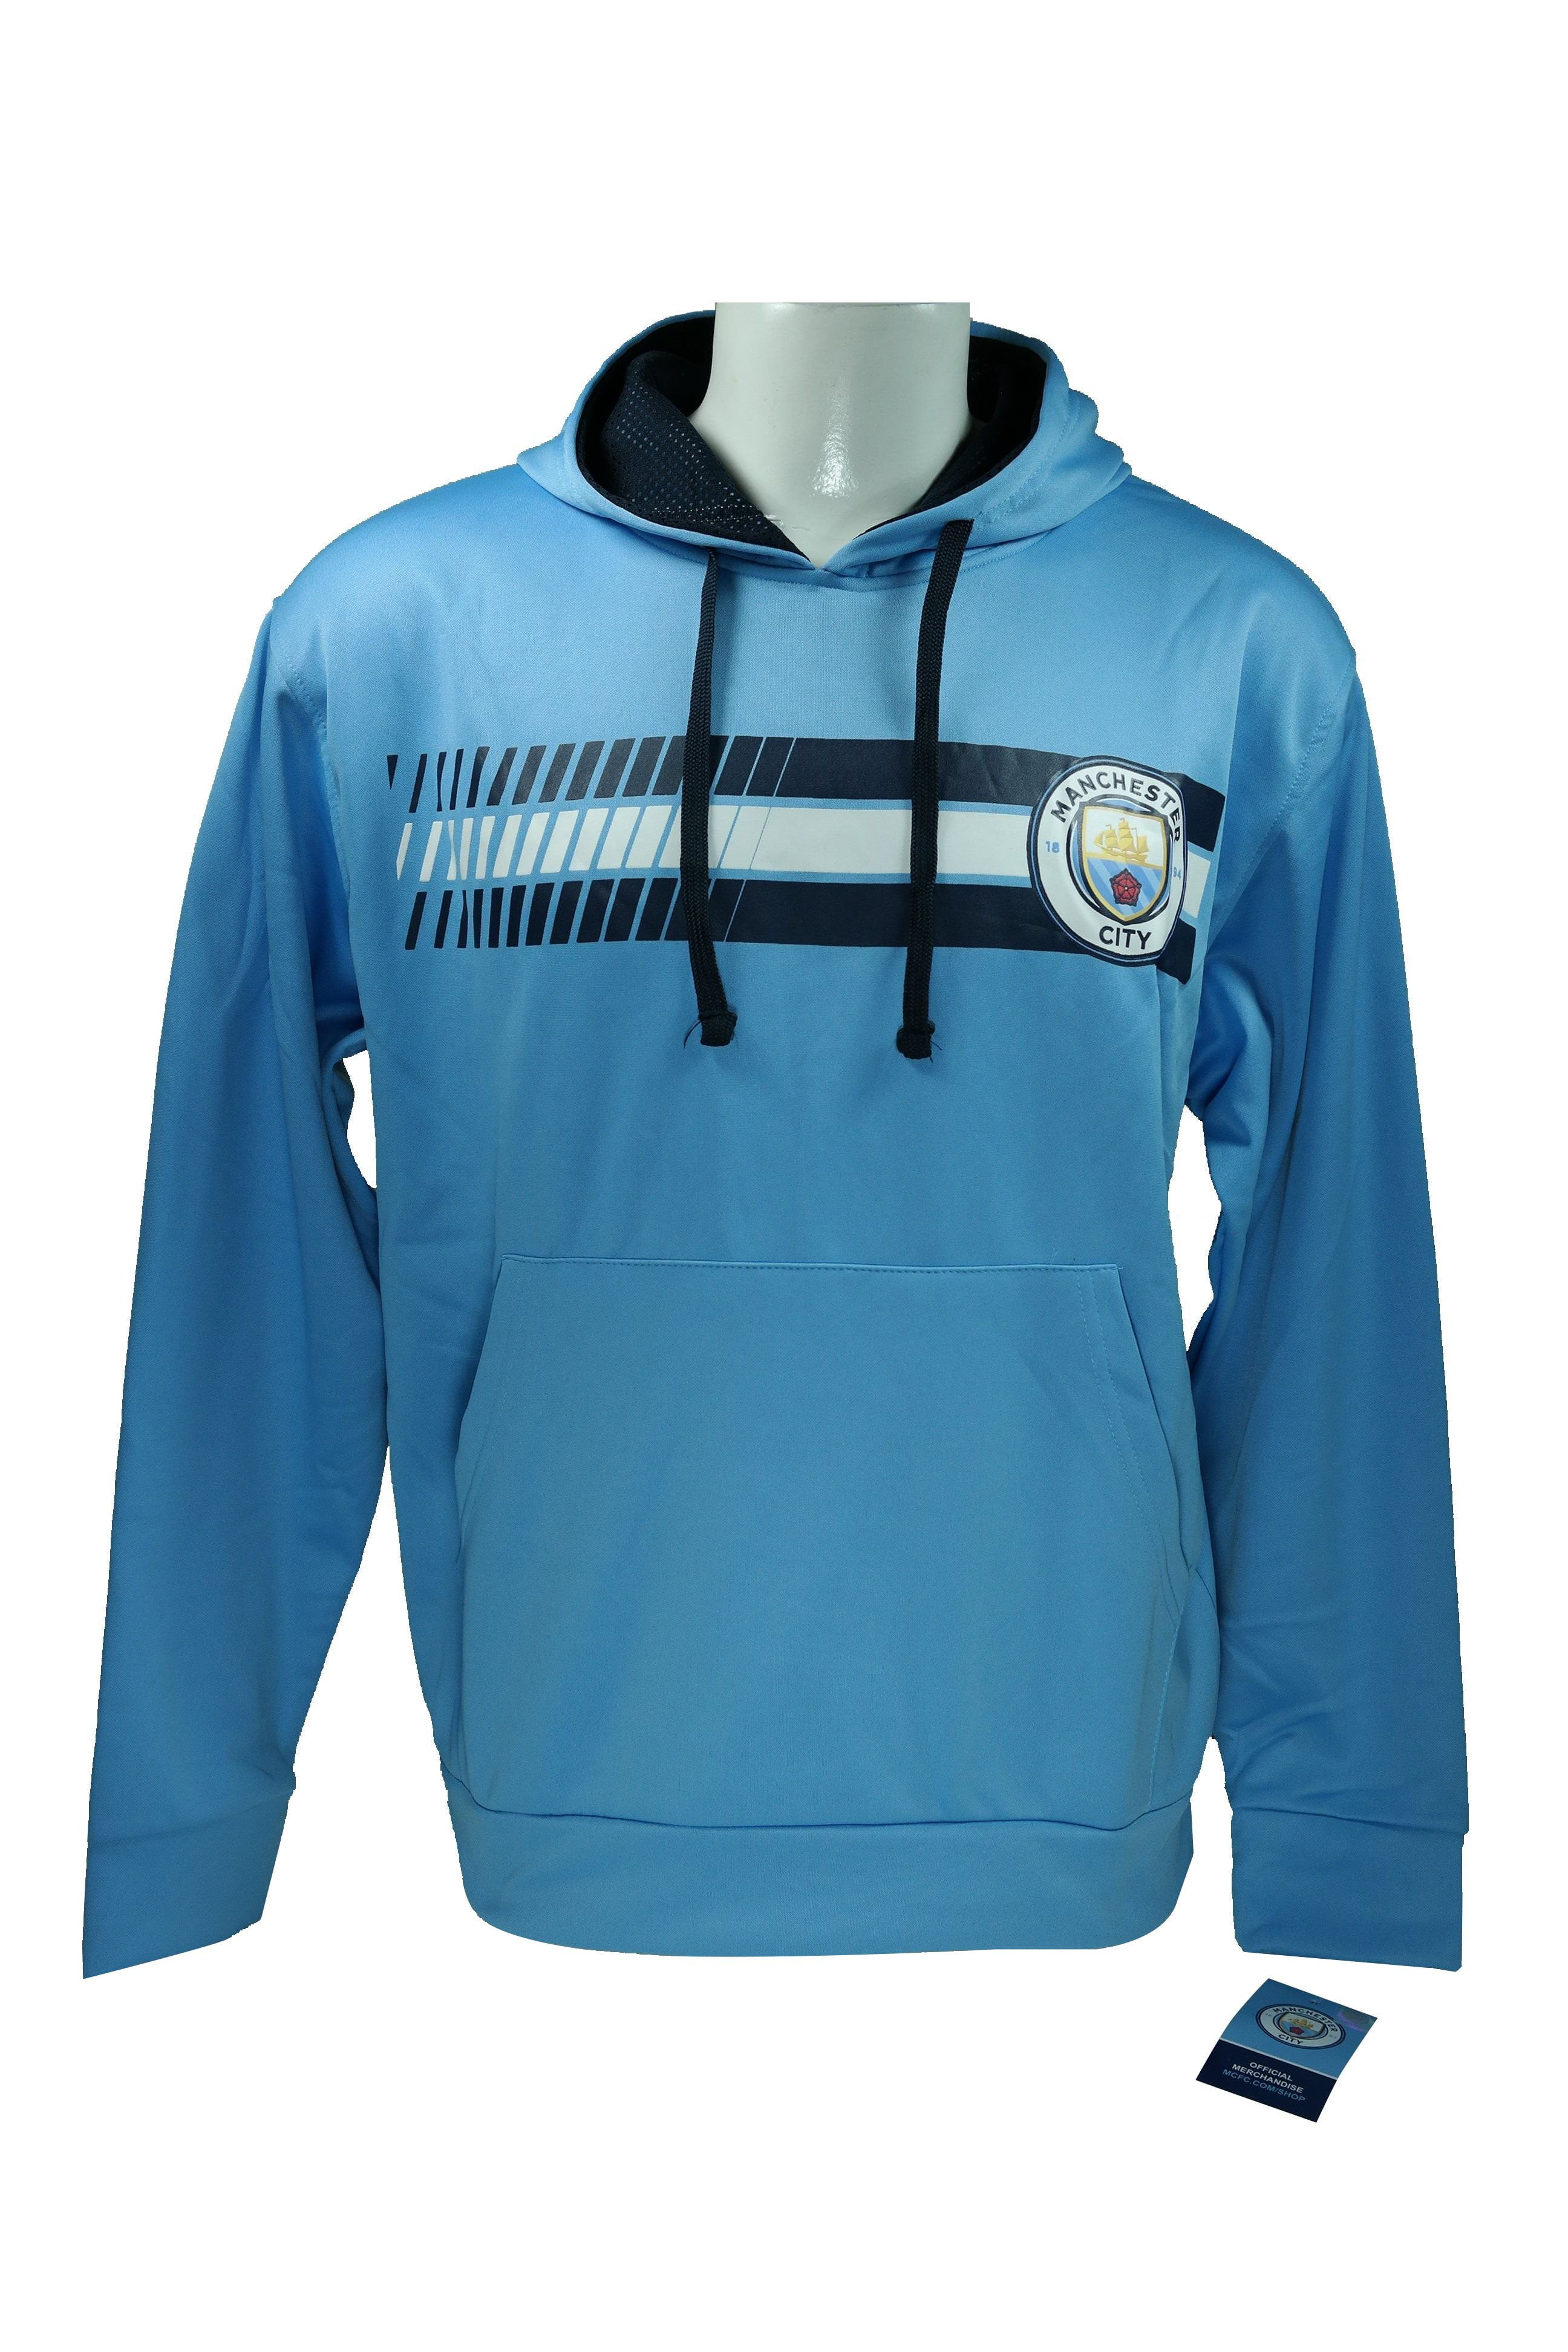 Ooit doe alstublieft niet Beperkt Manchester City F.C. Front Fleece Jacket Sweatshirt Official License Soccer  Hoodie Large 016 - Walmart.com